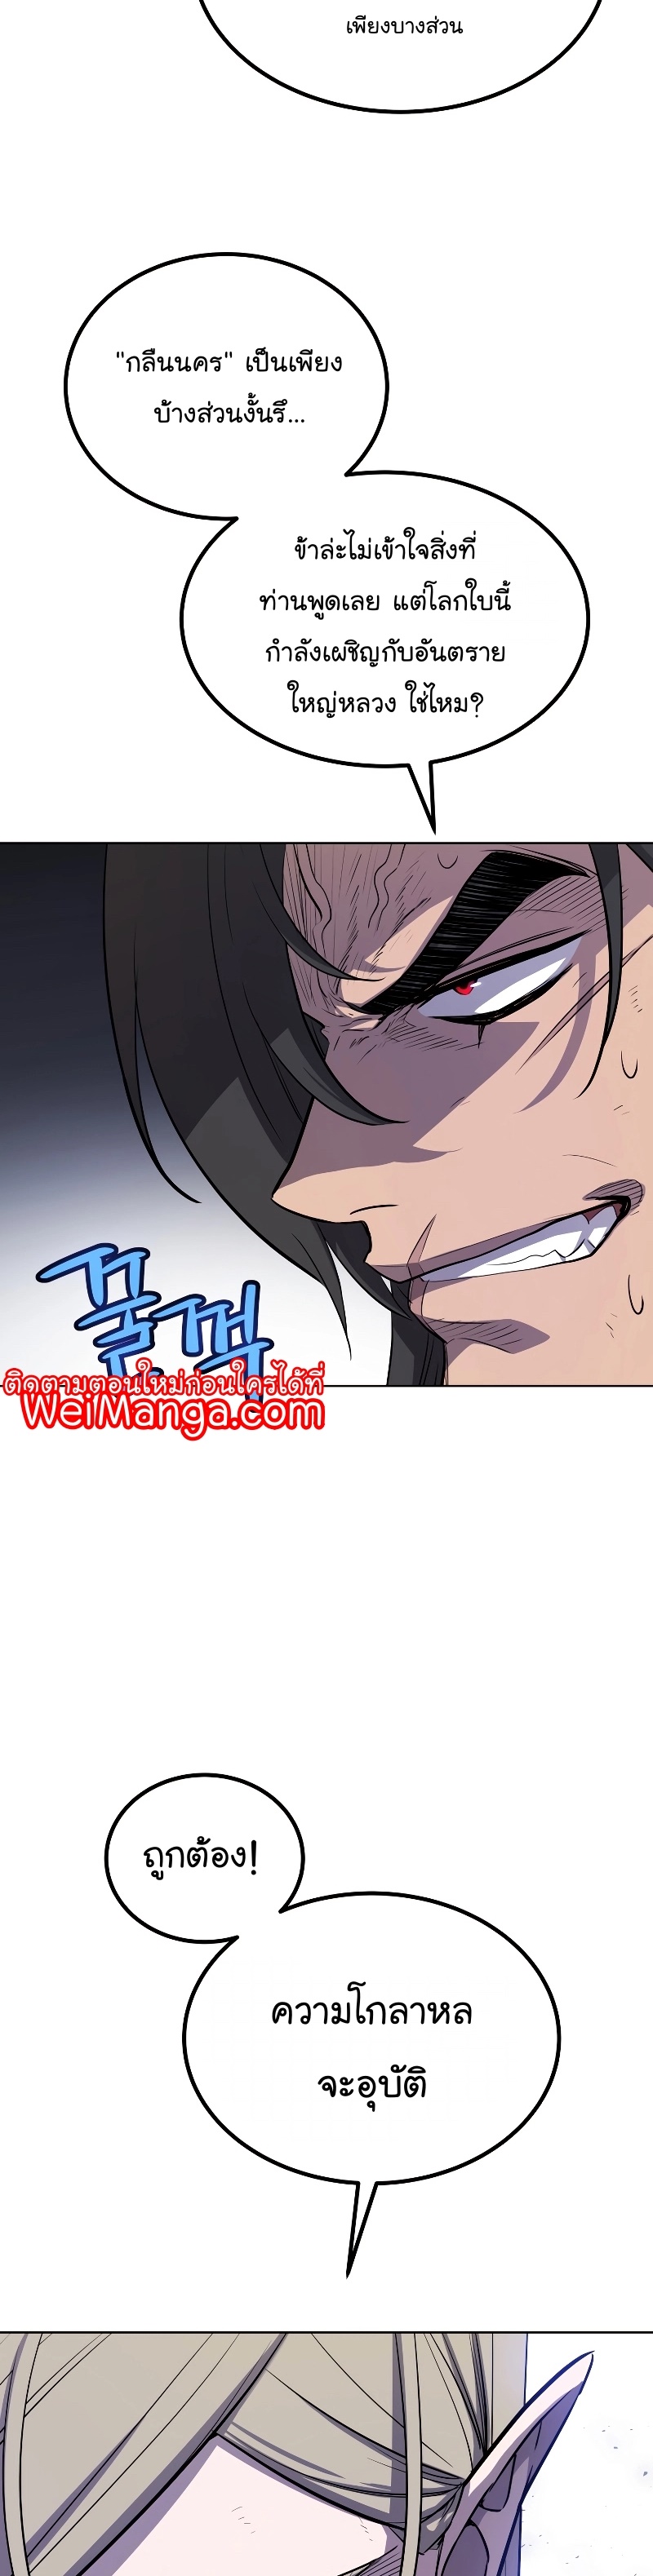 Overpowered Sword Wei Manga Manhwa 91 (15)